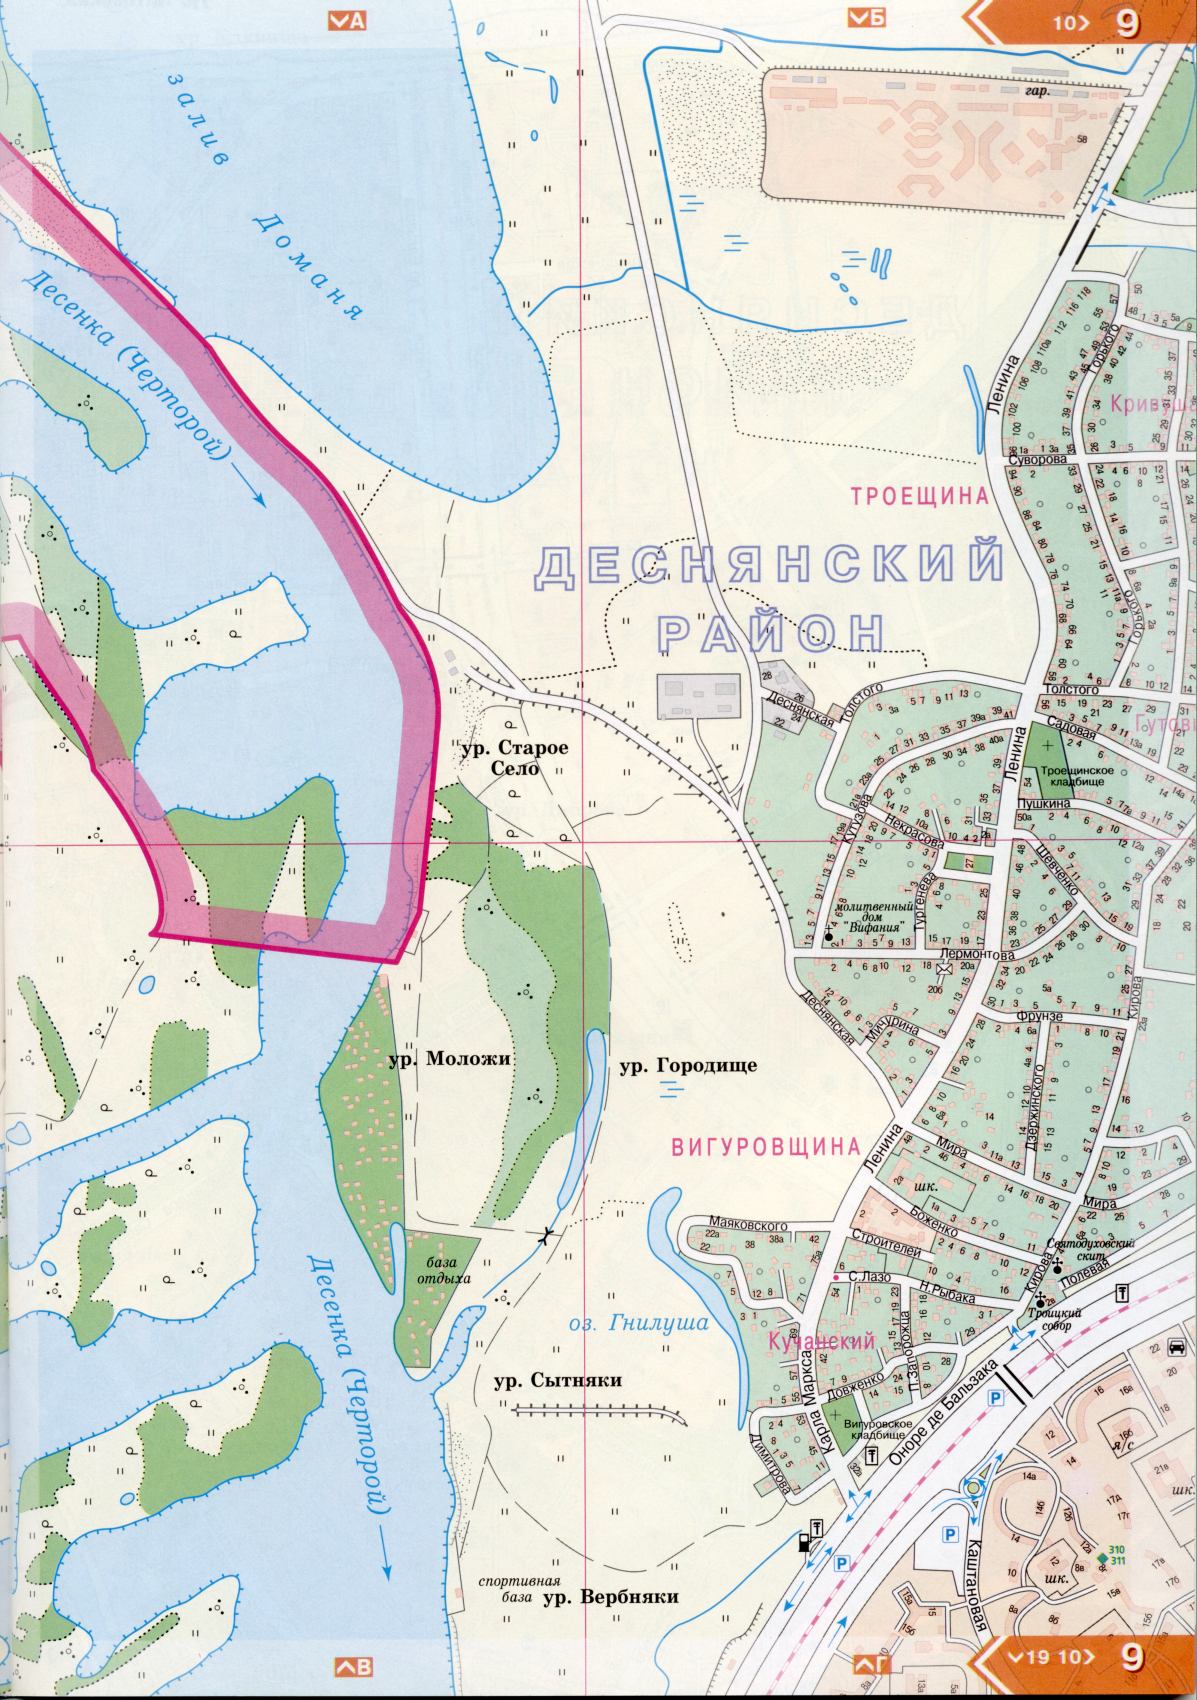 Kiew Karte Details 1cm = 150m für 45 Blatt. Karte von Kiew aus dem Atlas von Autobahnen. Laden Sie eine detaillierte Karte, G0